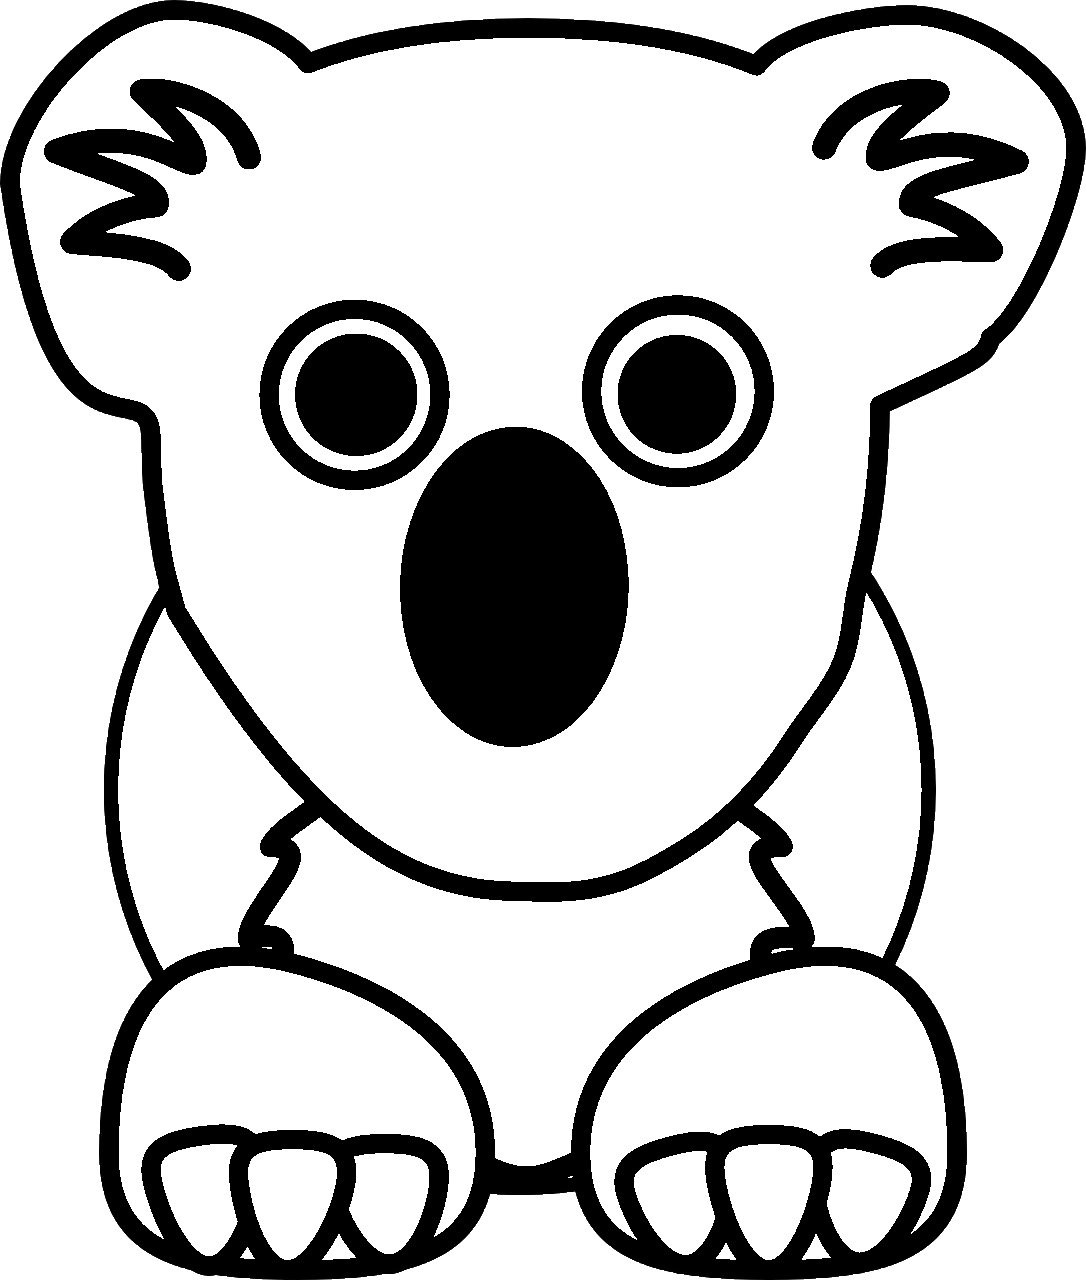 Disegno da colorare di orso koala